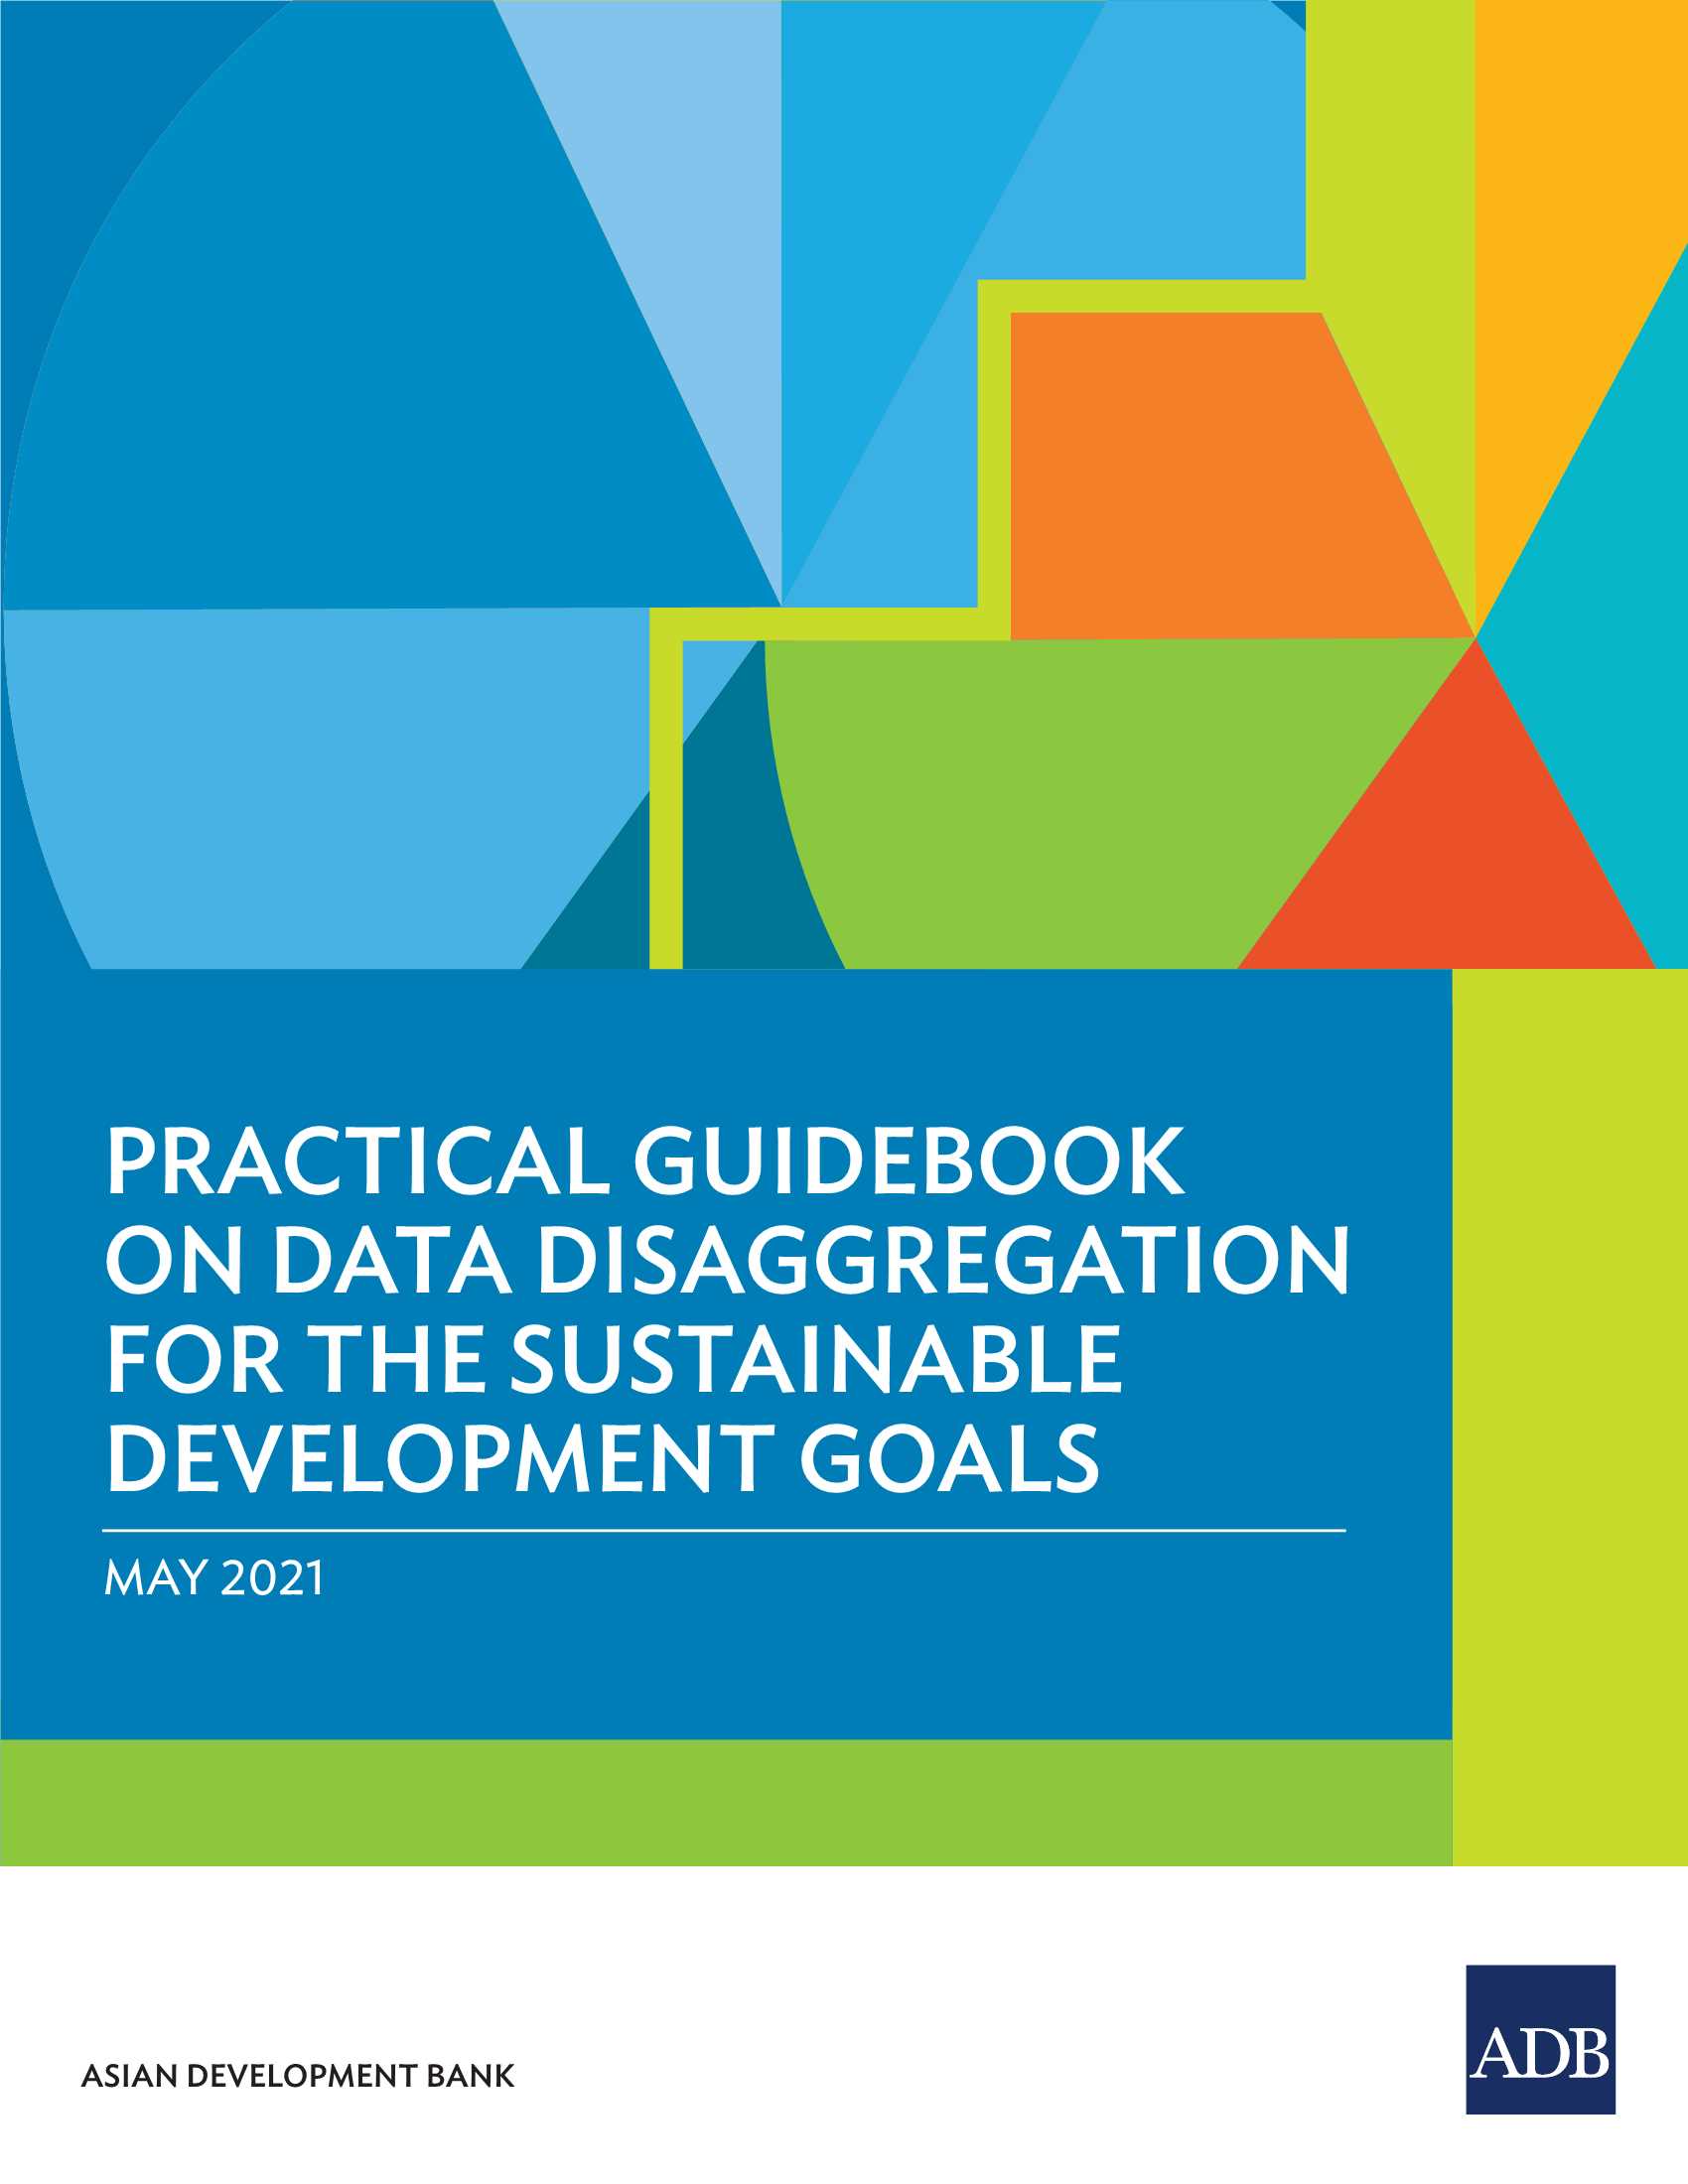 亚开行-可持续发展目标数据分类实用指南（英文）-2021.05-117页